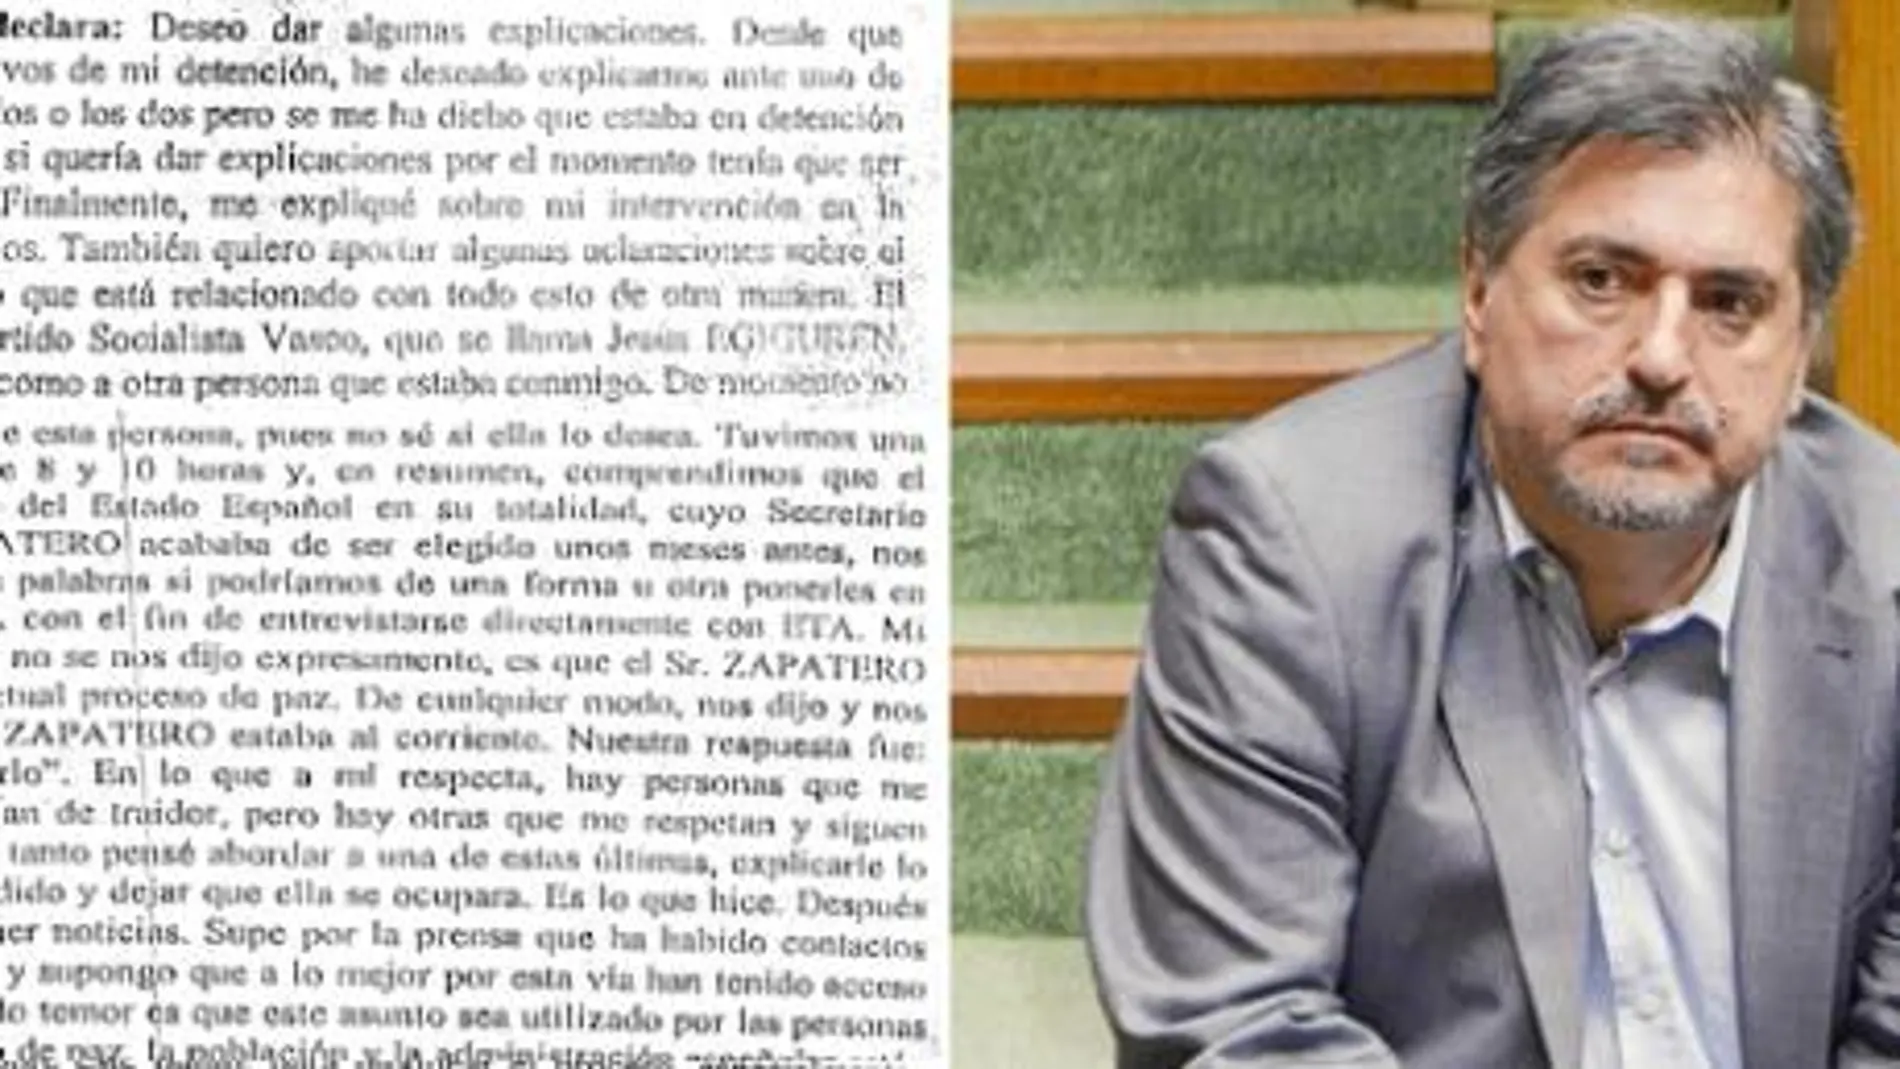 Eguiguren, en la imagen, pidió a Madariaga un contacto con ETA según la declaración que hizo el terrorista a la juez Laurence Le Vert (ver reproducción de la izquierda)